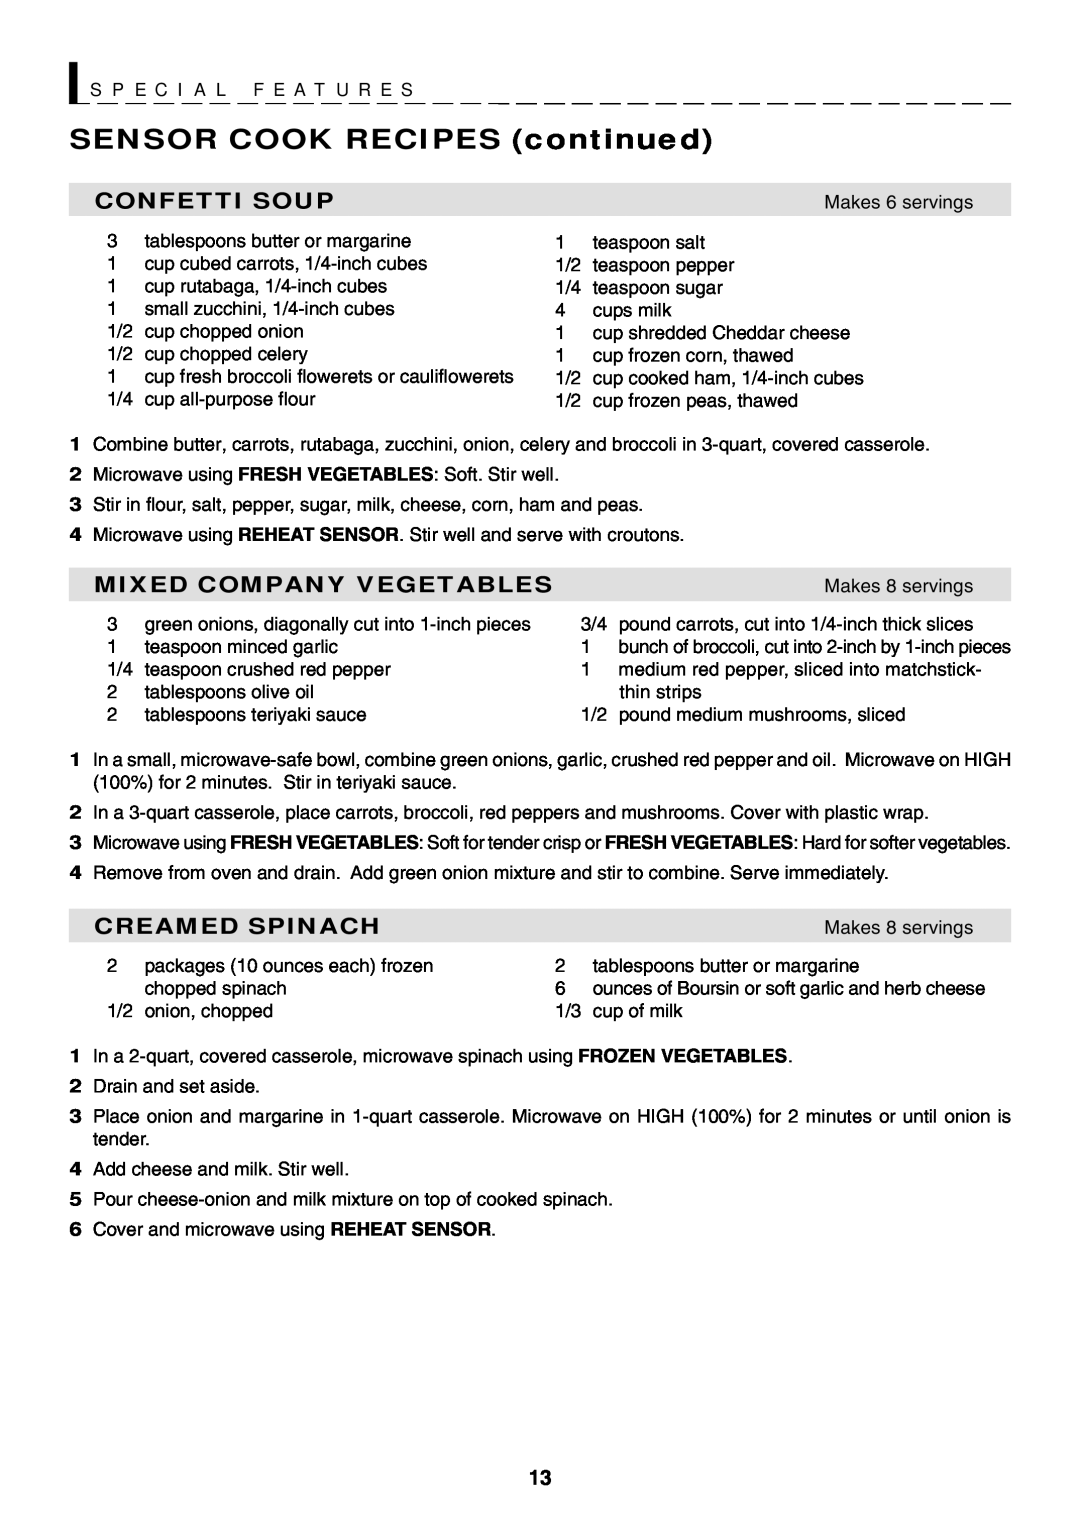 Sharp R-319F manual SENSOR COOK RECIPES continued, S P E C I A L F E A T U R E S, Confetti Soup, Mixed Company Vegetables 